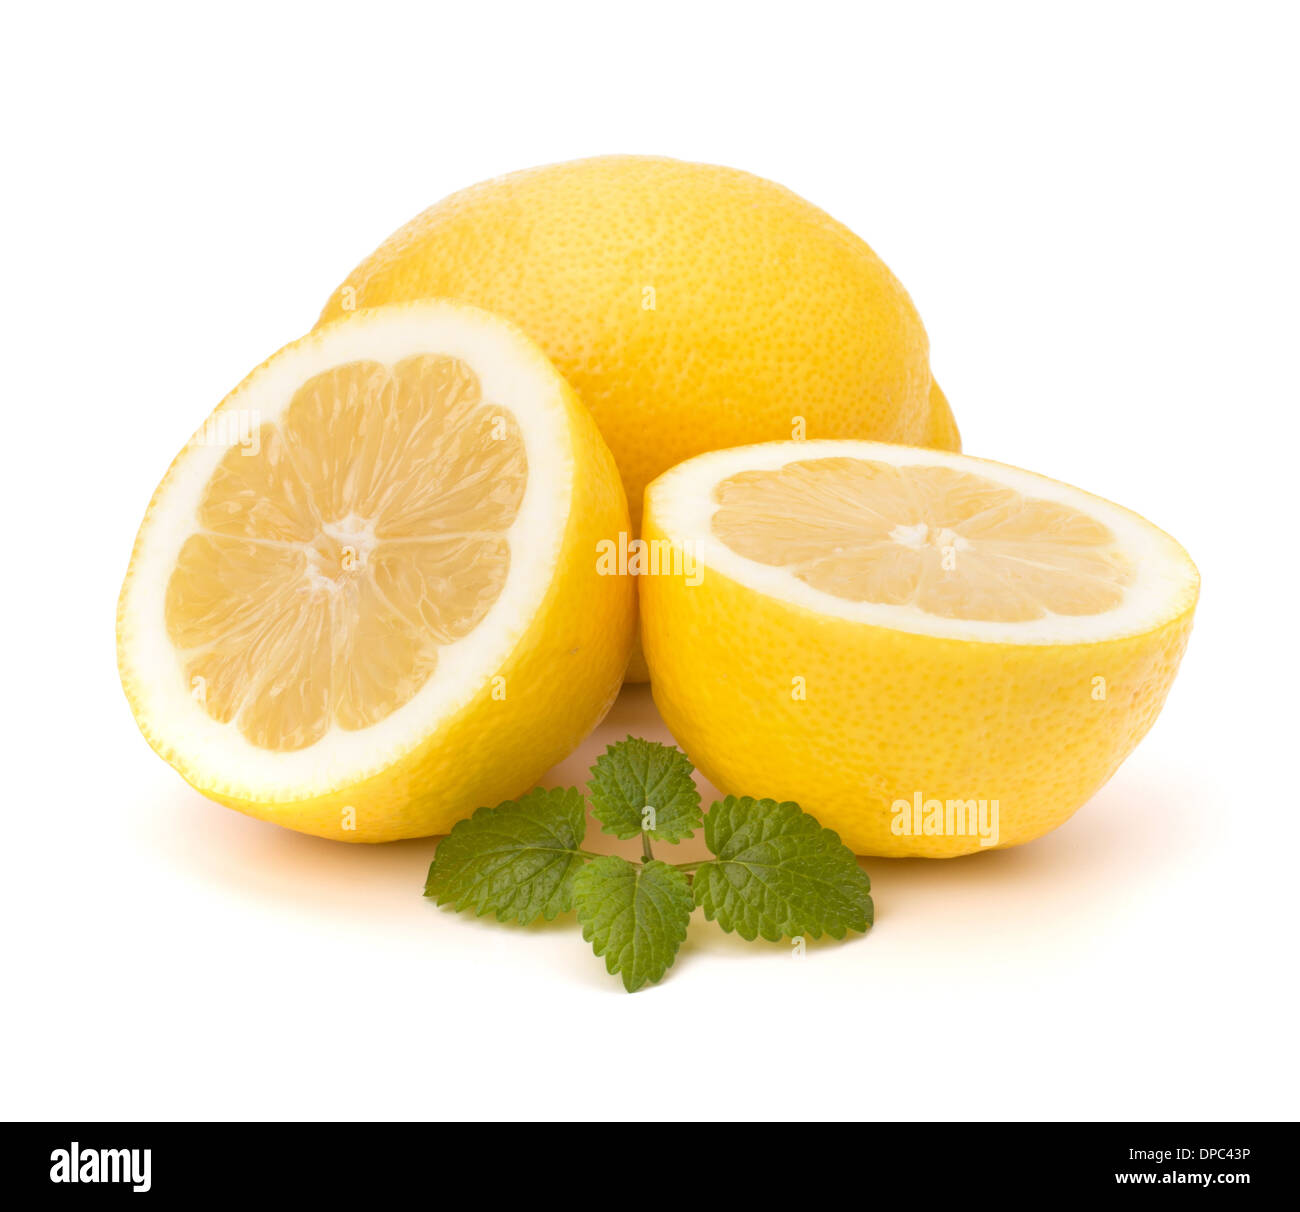 Lemon and citron mint leaf isolated on white background Stock Photo